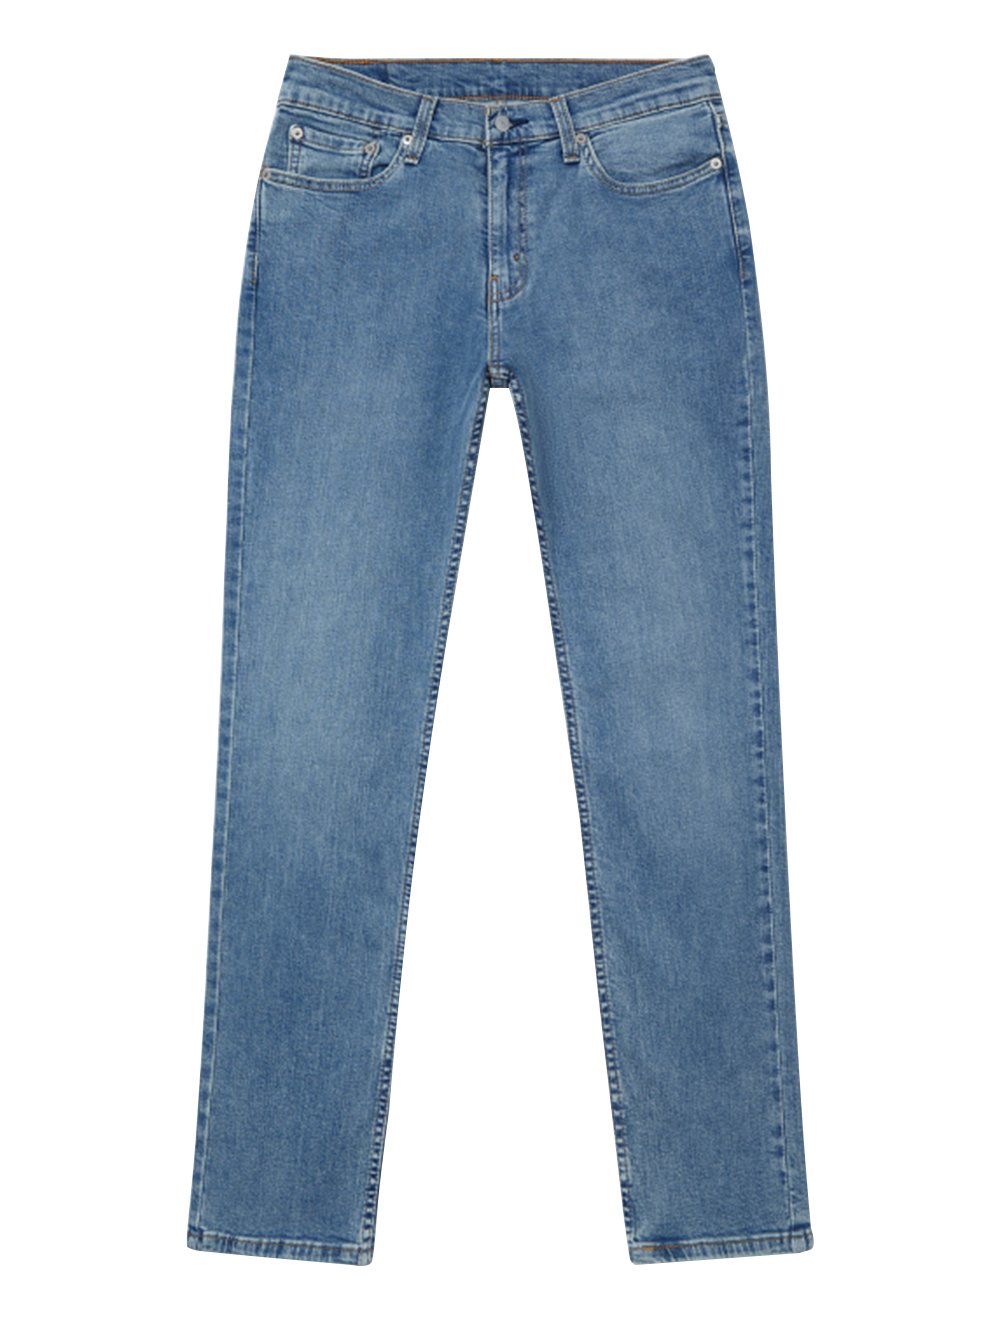 Calça Levis Jeans Masculina 511 Slim Stretch Silver Button Azul